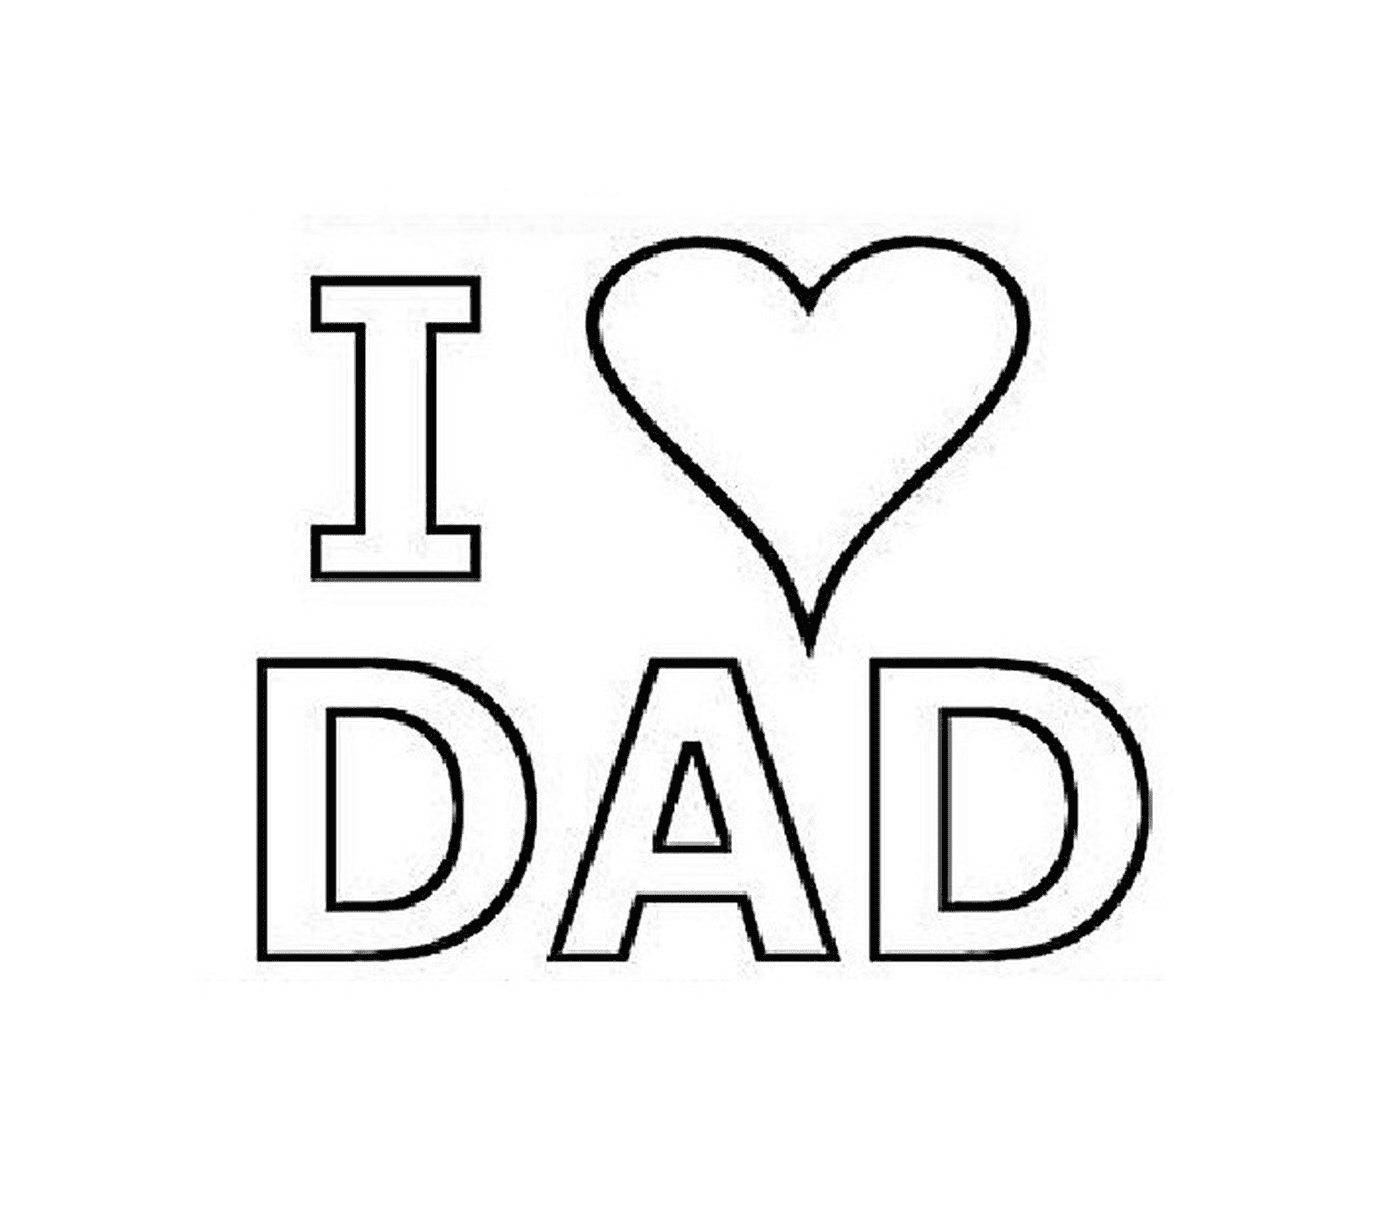  Ich liebe dich, Dad 